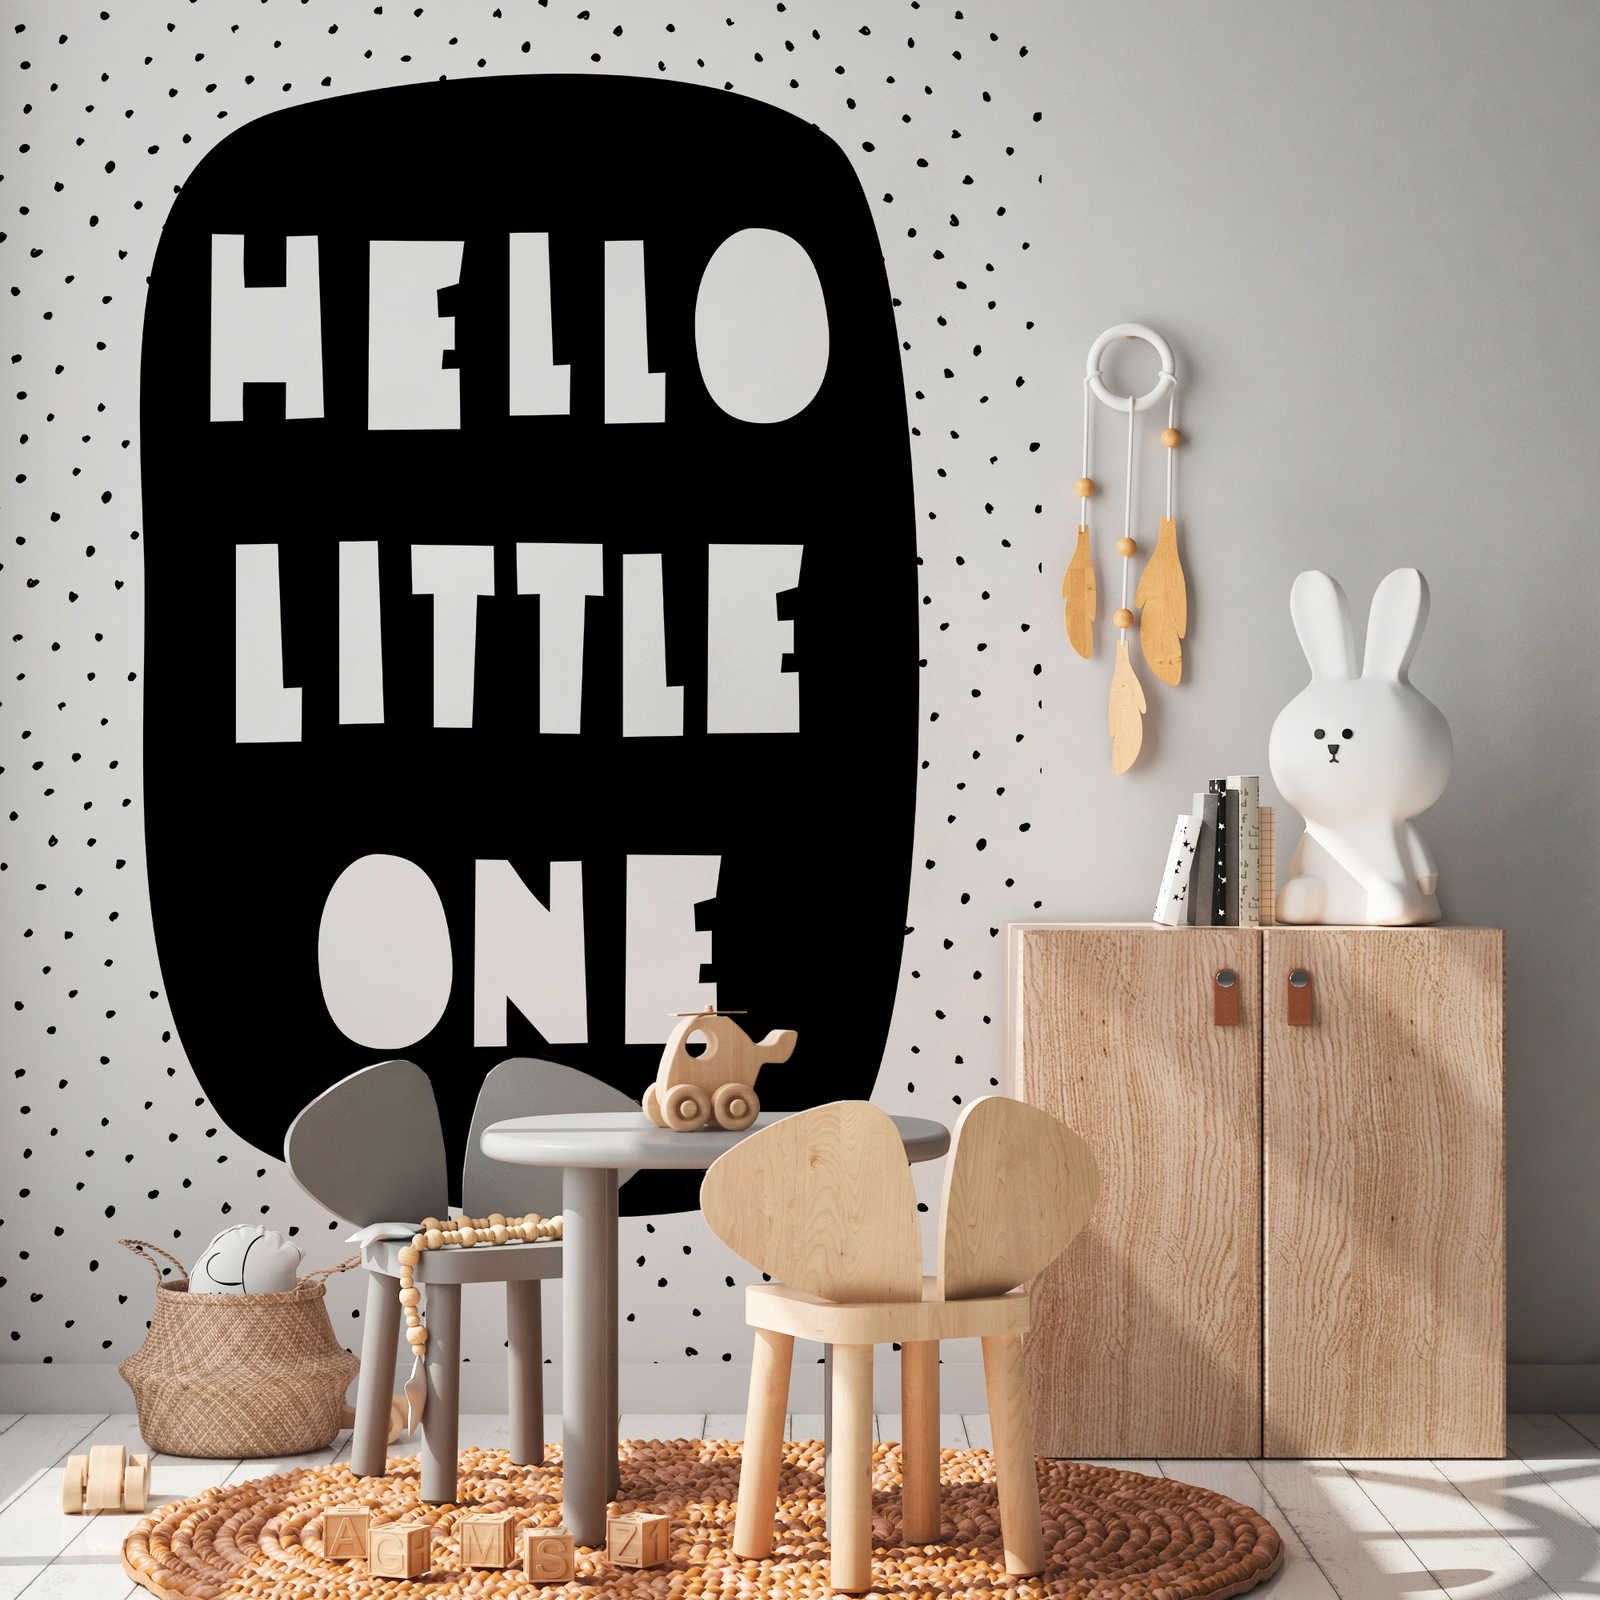 Fototapete fürs Kinderzimmer mit Schriftzug "Hello Little One" – Glattes & mattes Vlies
